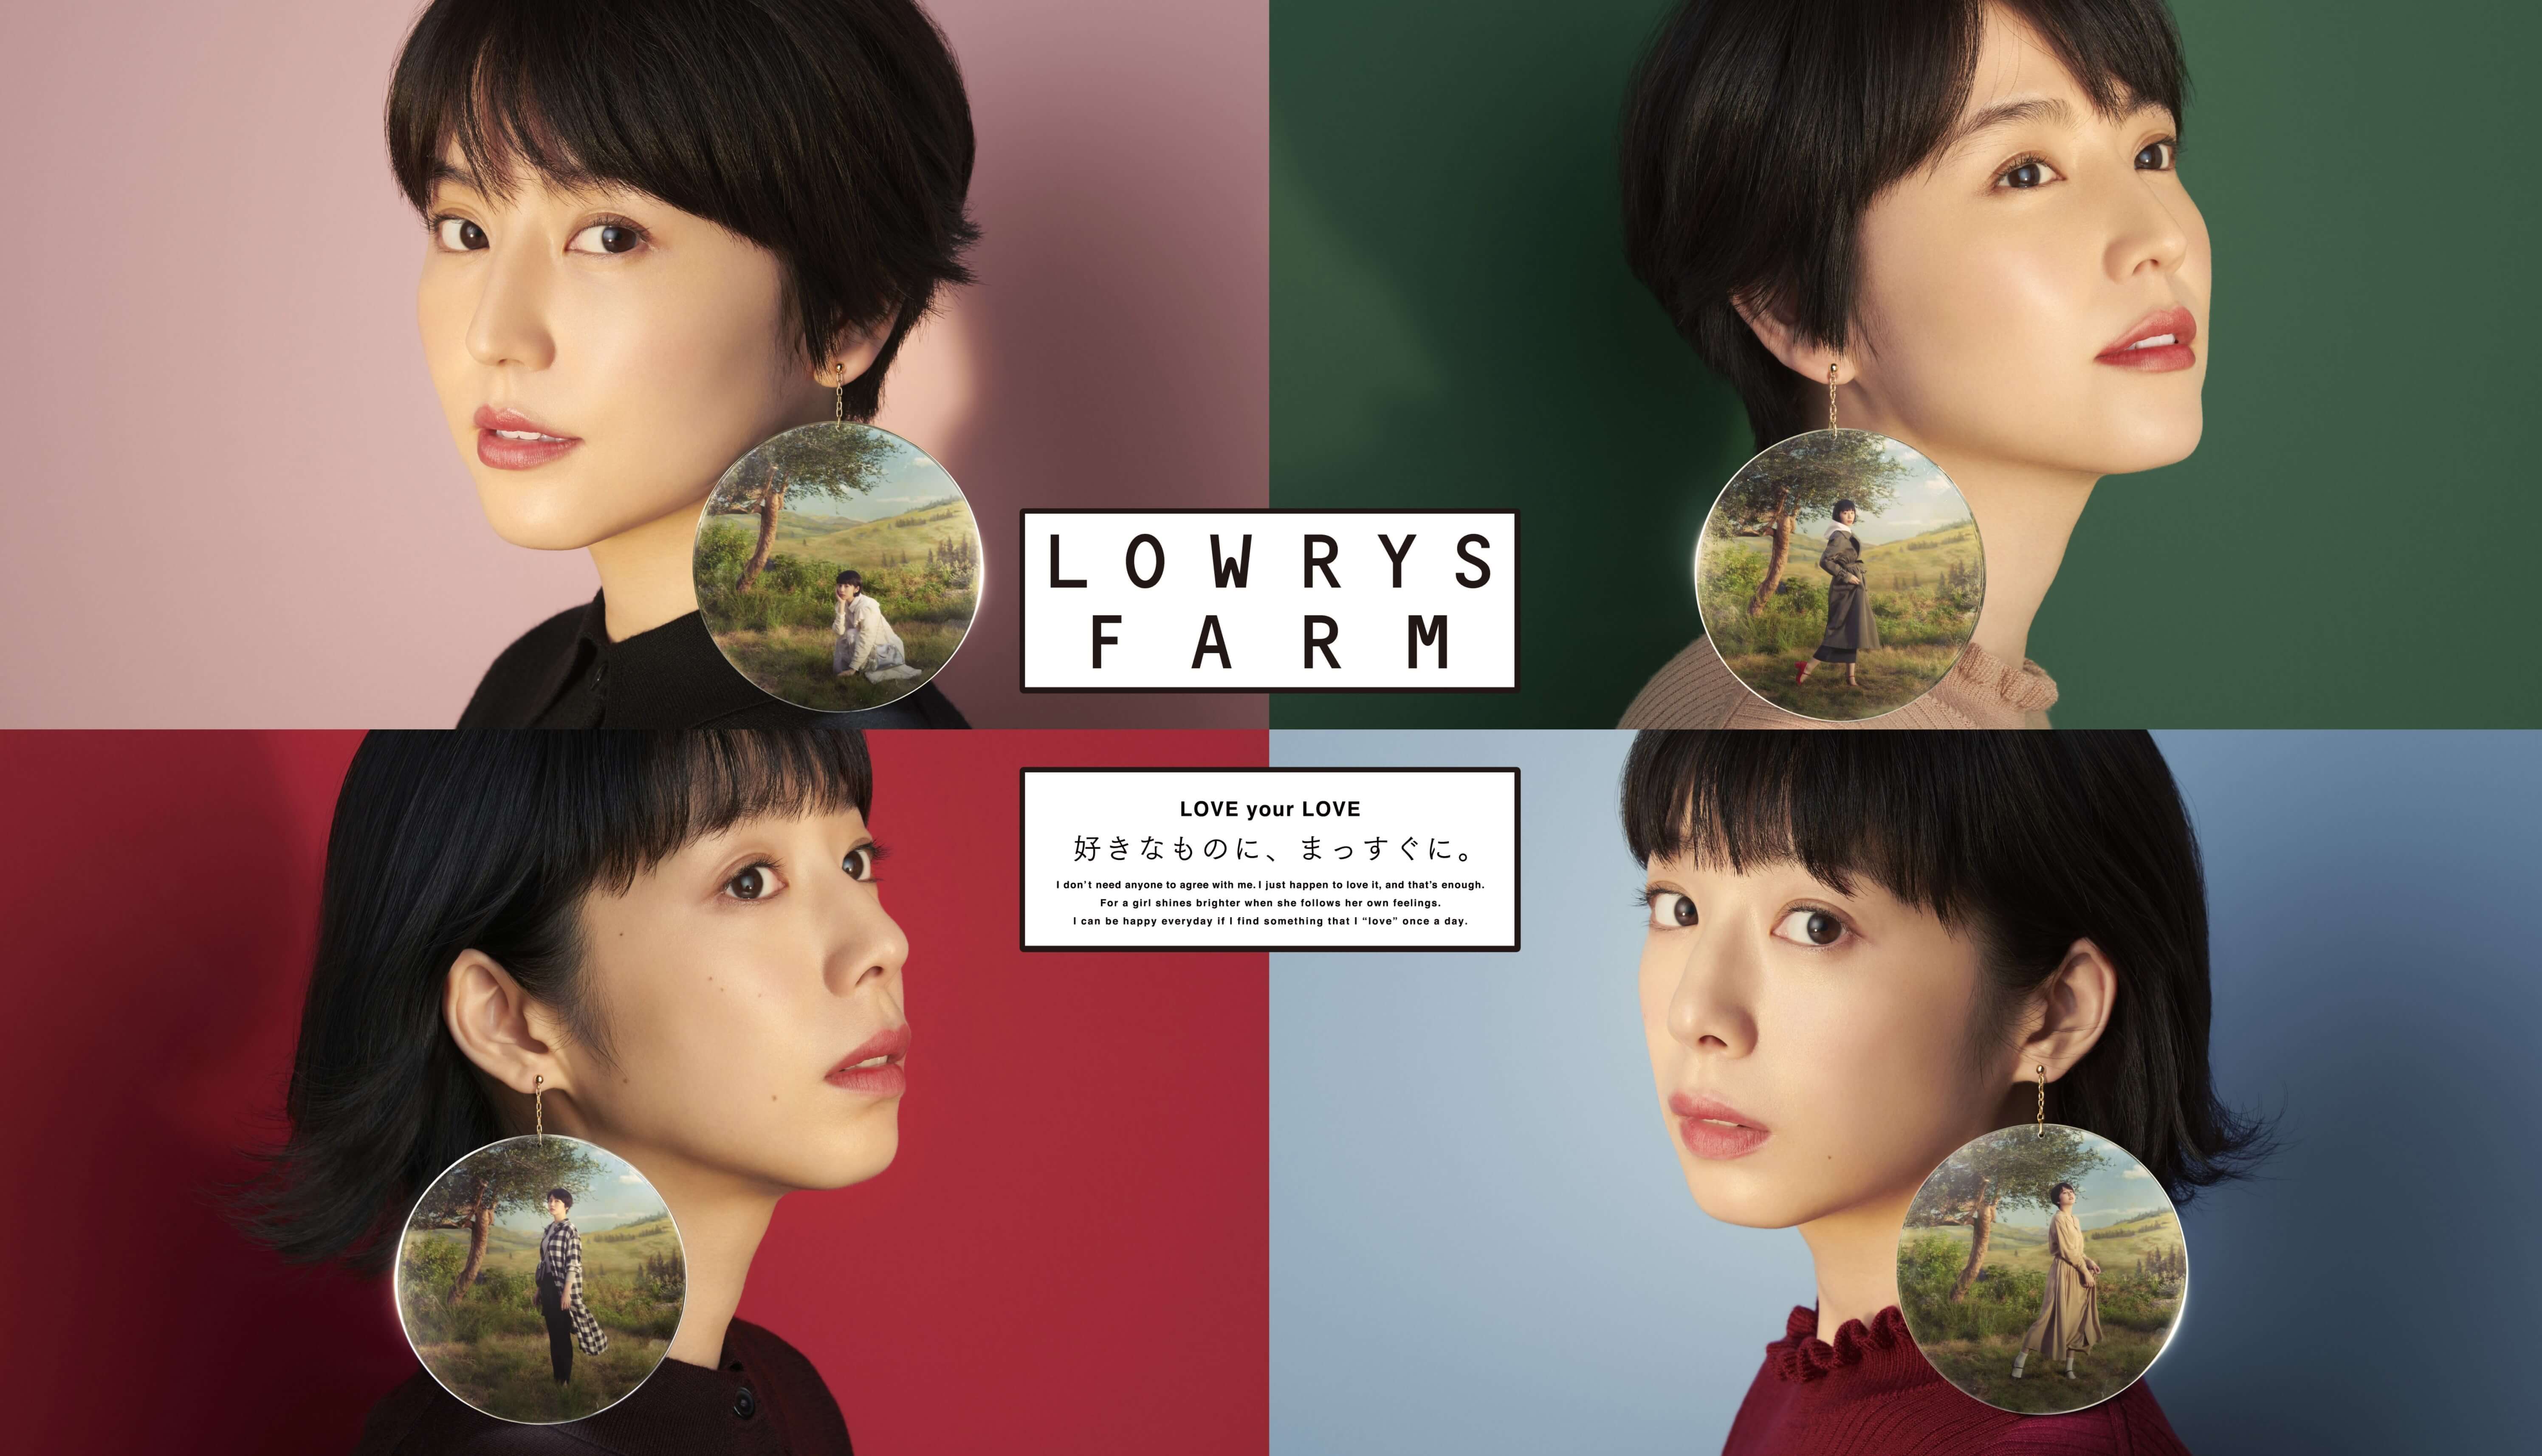 lowrys-farm-2018aw%e3%83%a1%e3%82%a4%e3%83%b3%e7%94%bb%e5%83%8f-2